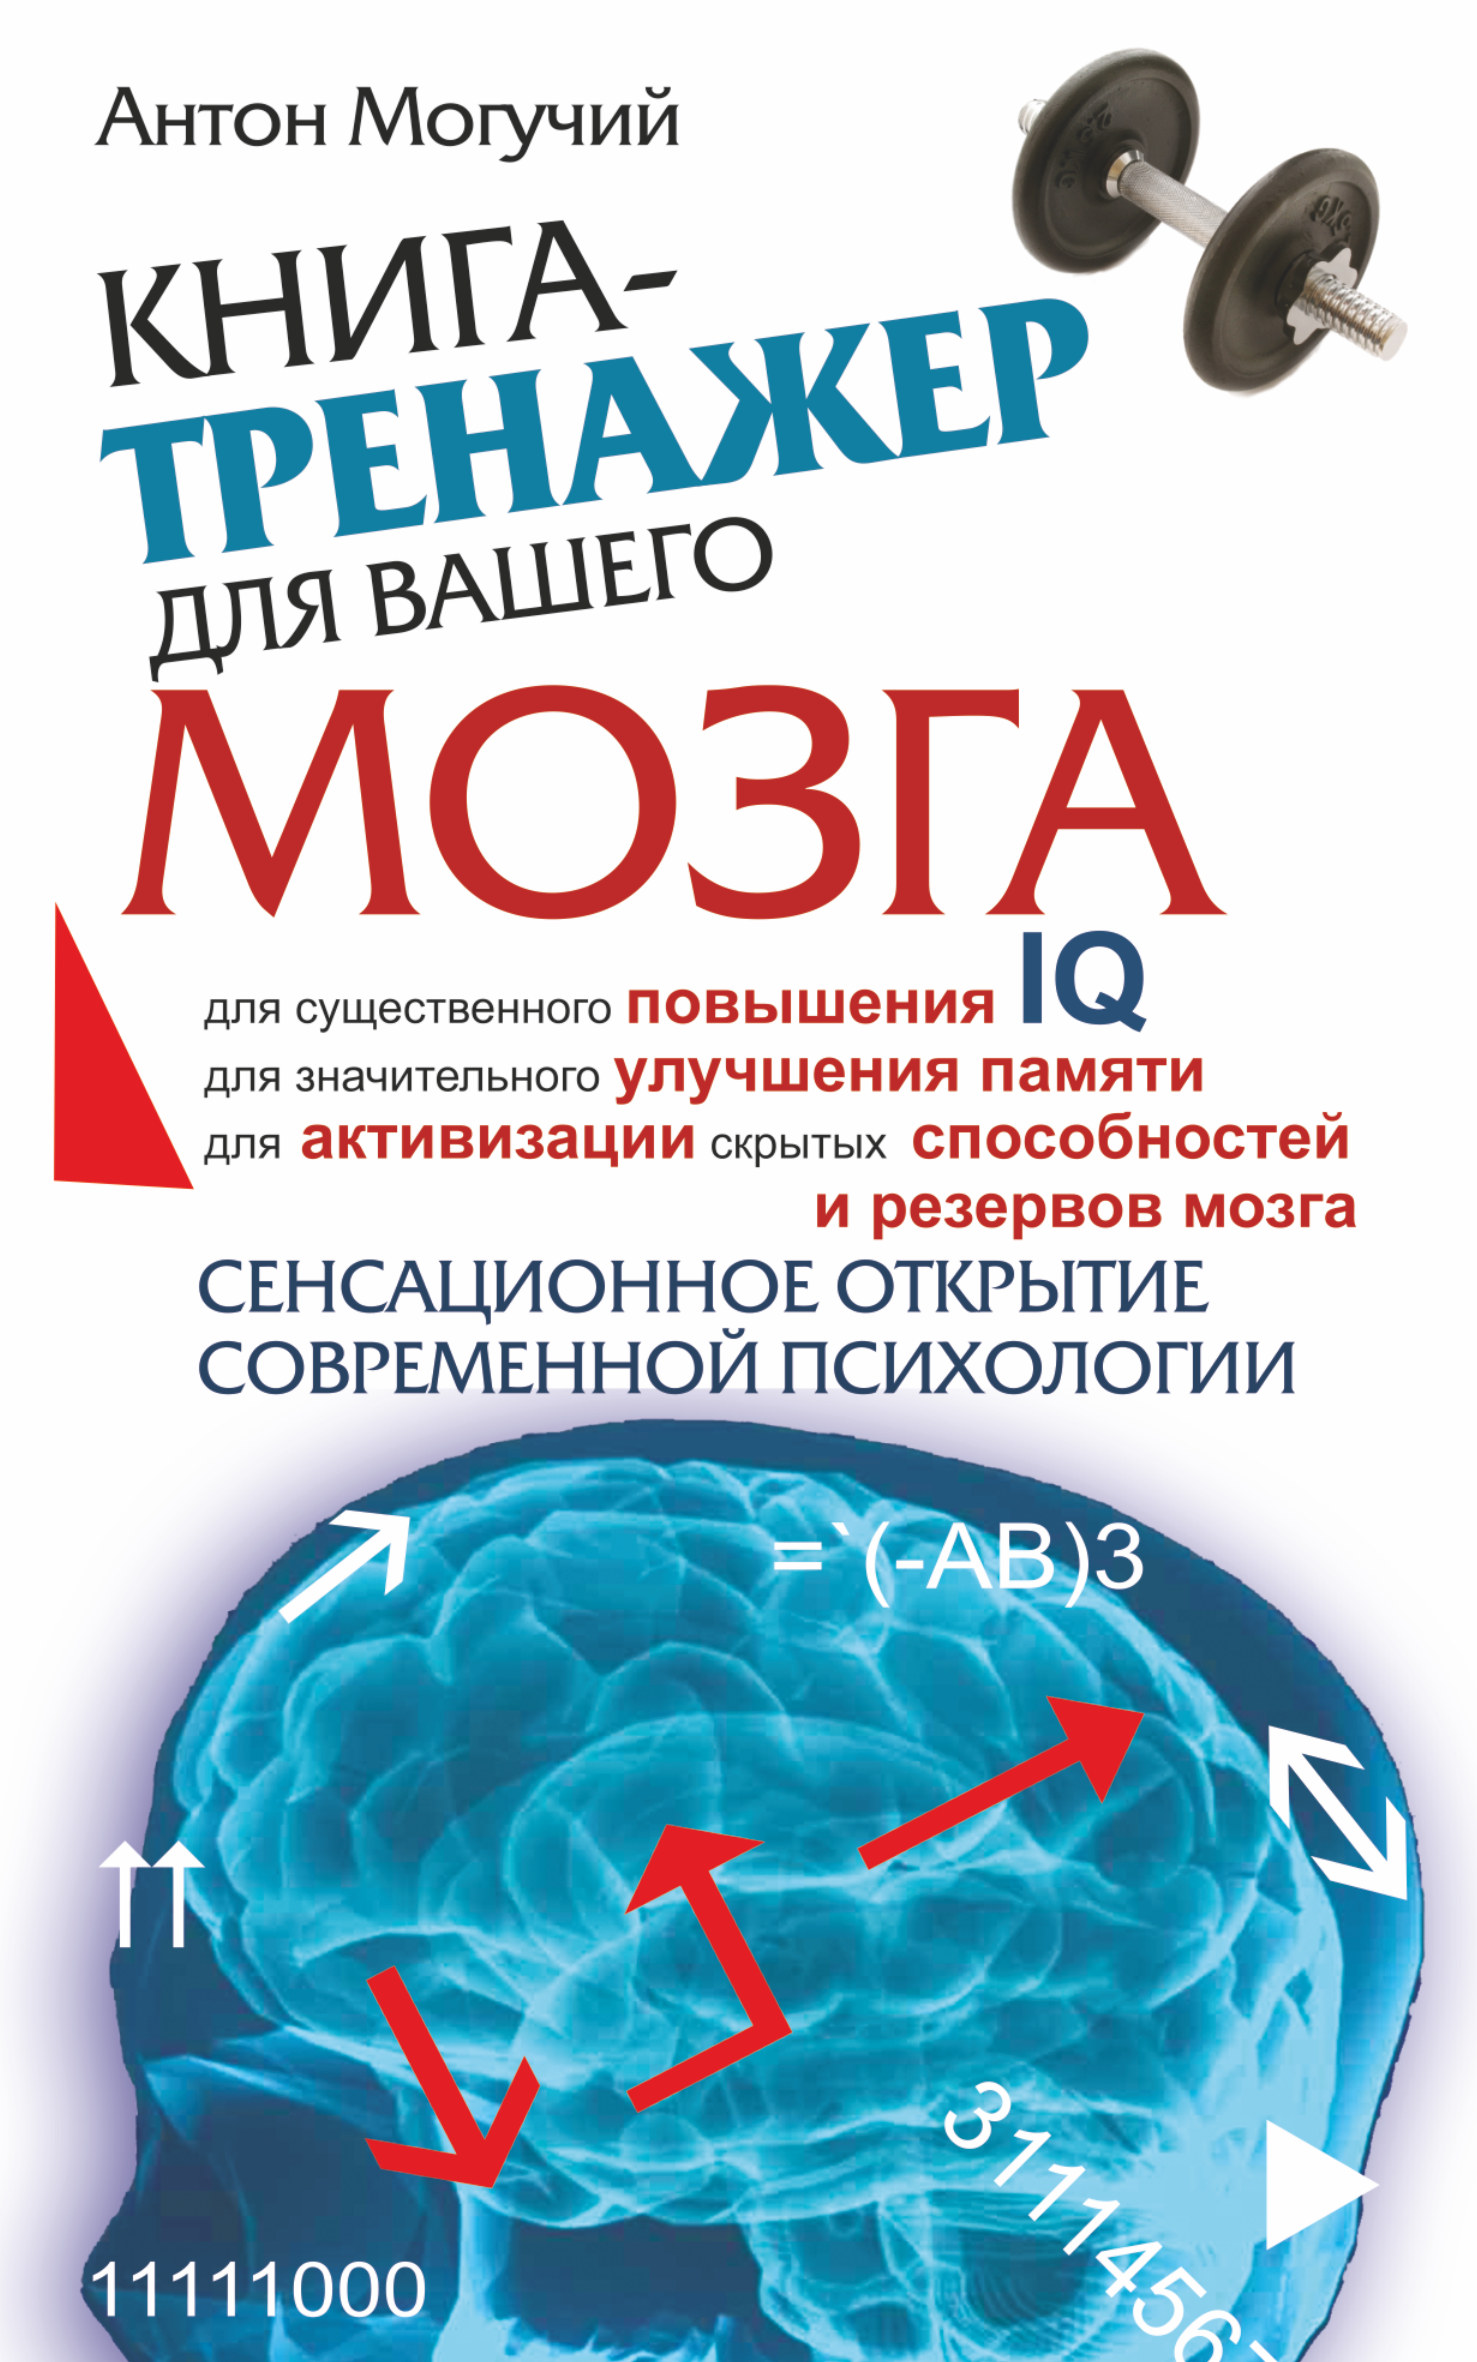 Могучий Антон - Книга-тренажер для вашего мозга